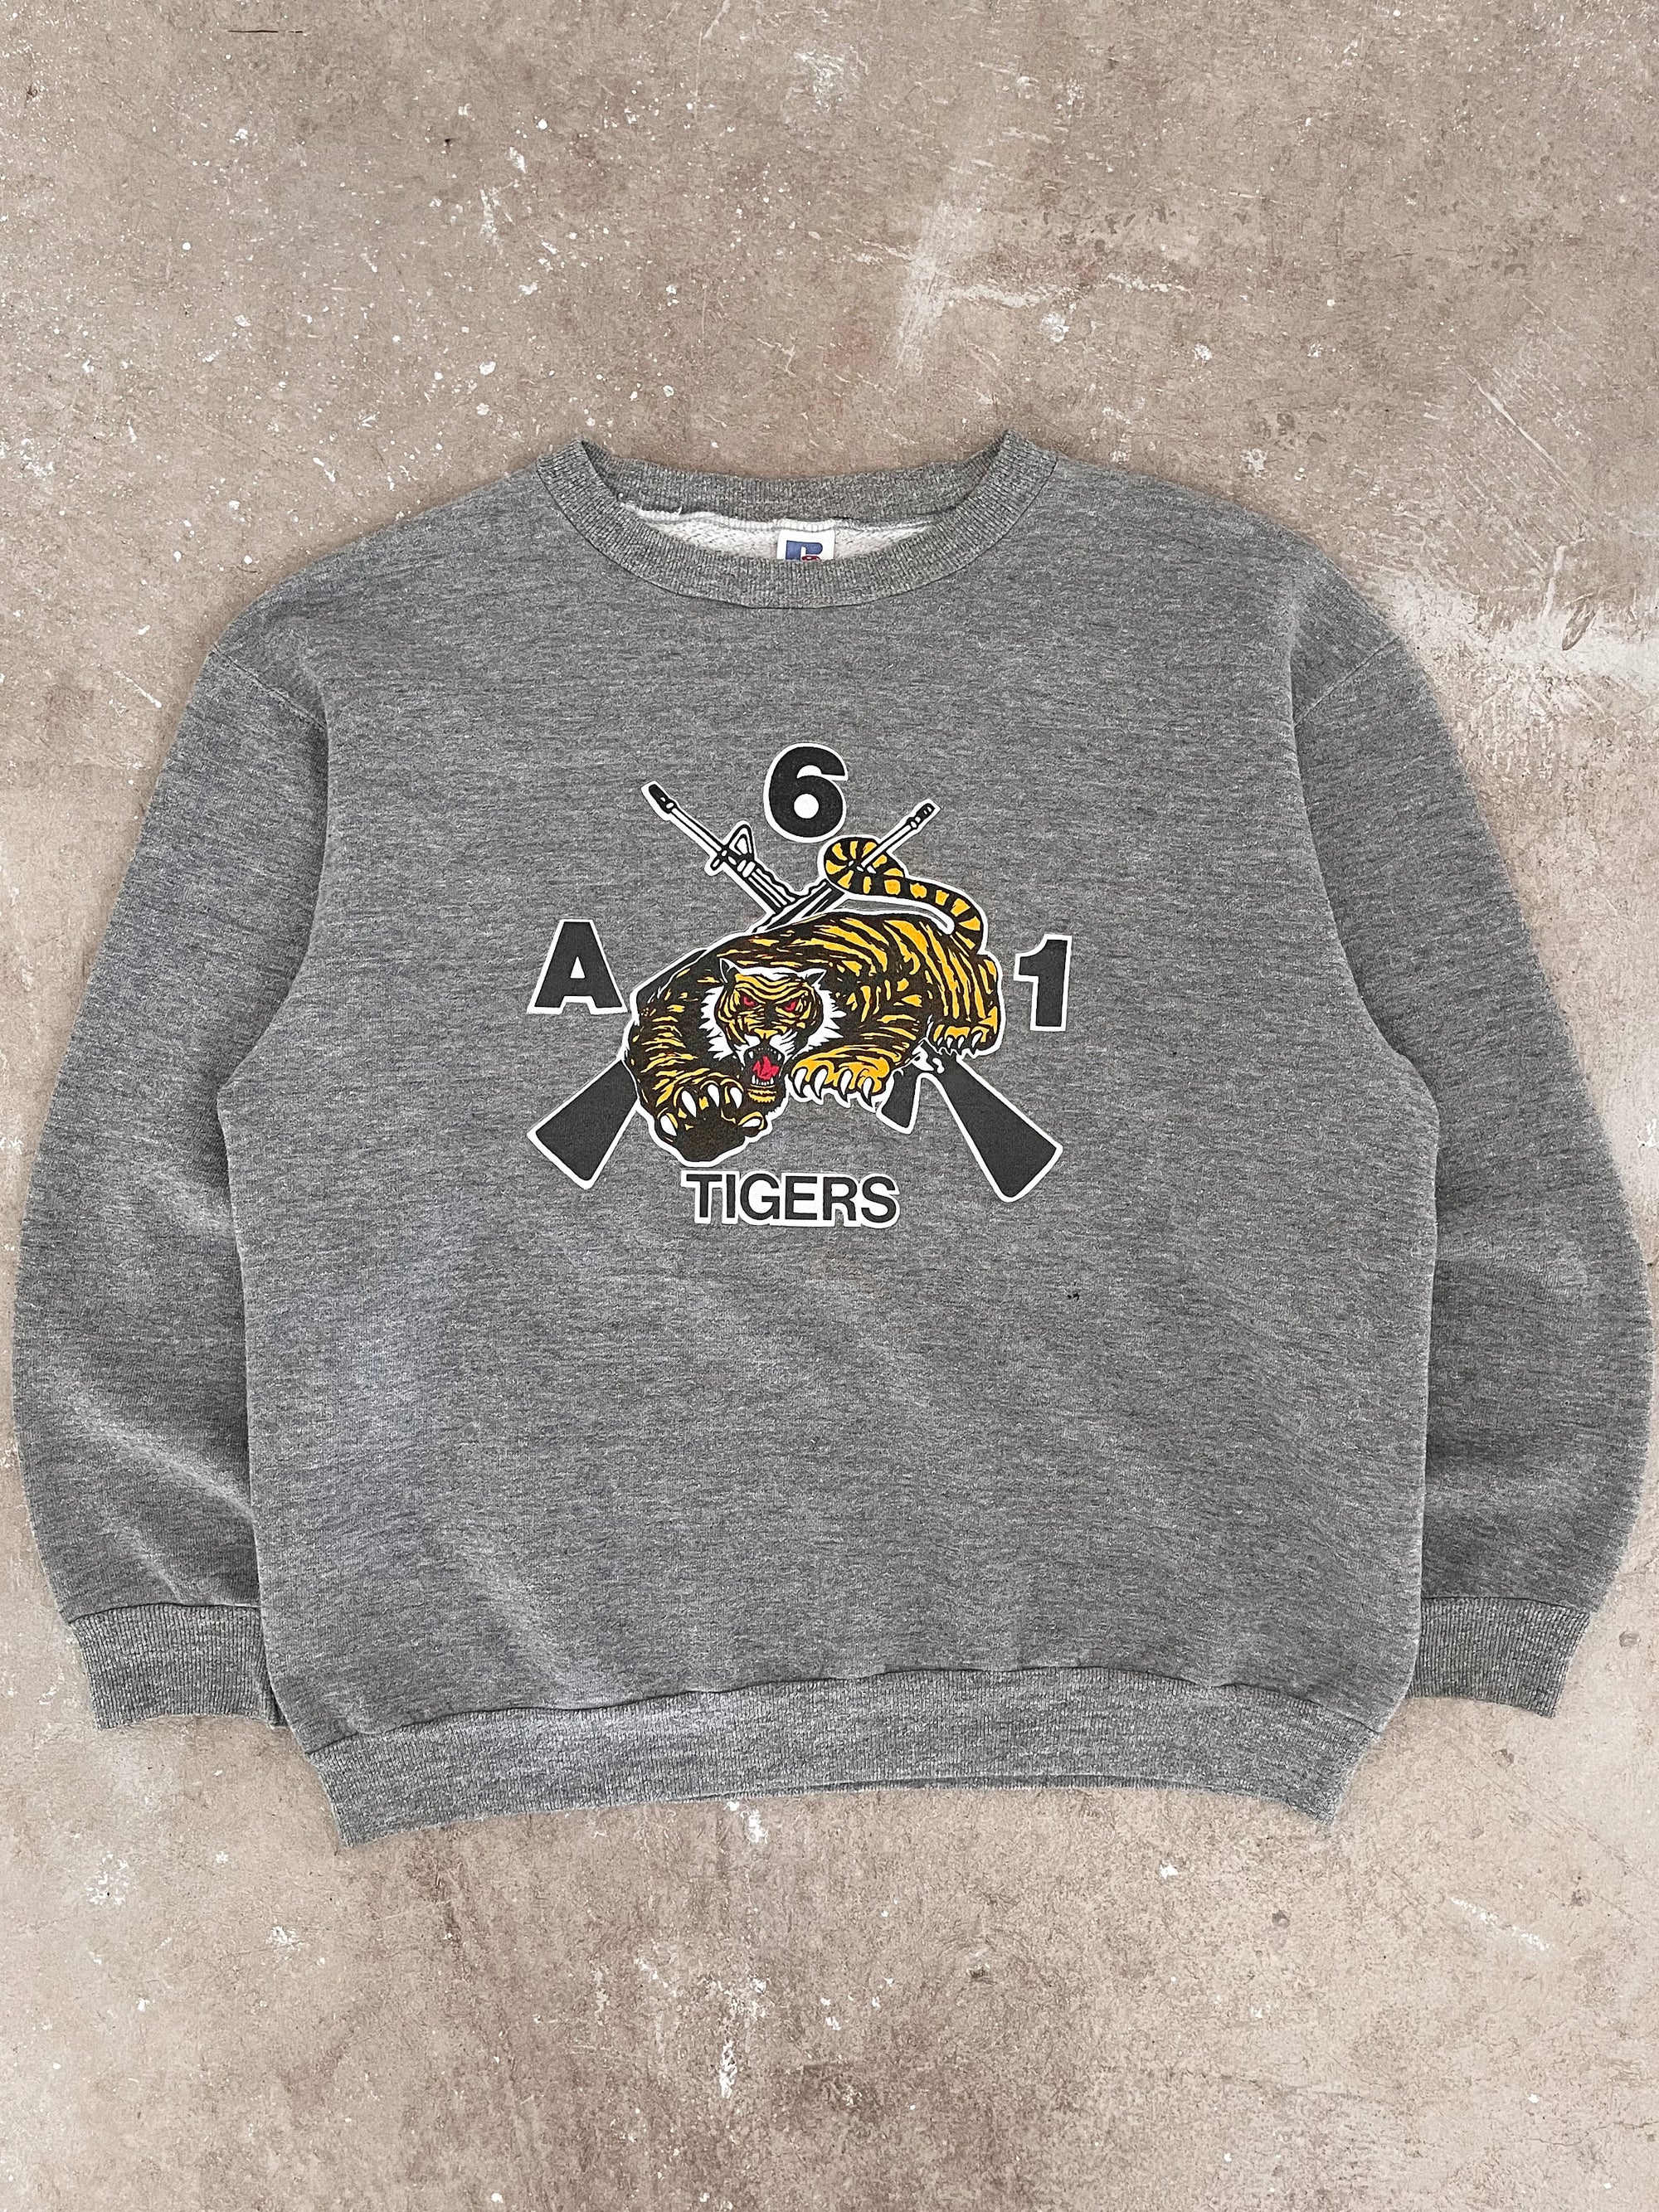 1980s Russell “Tigers” Sweatshirt (M/L)